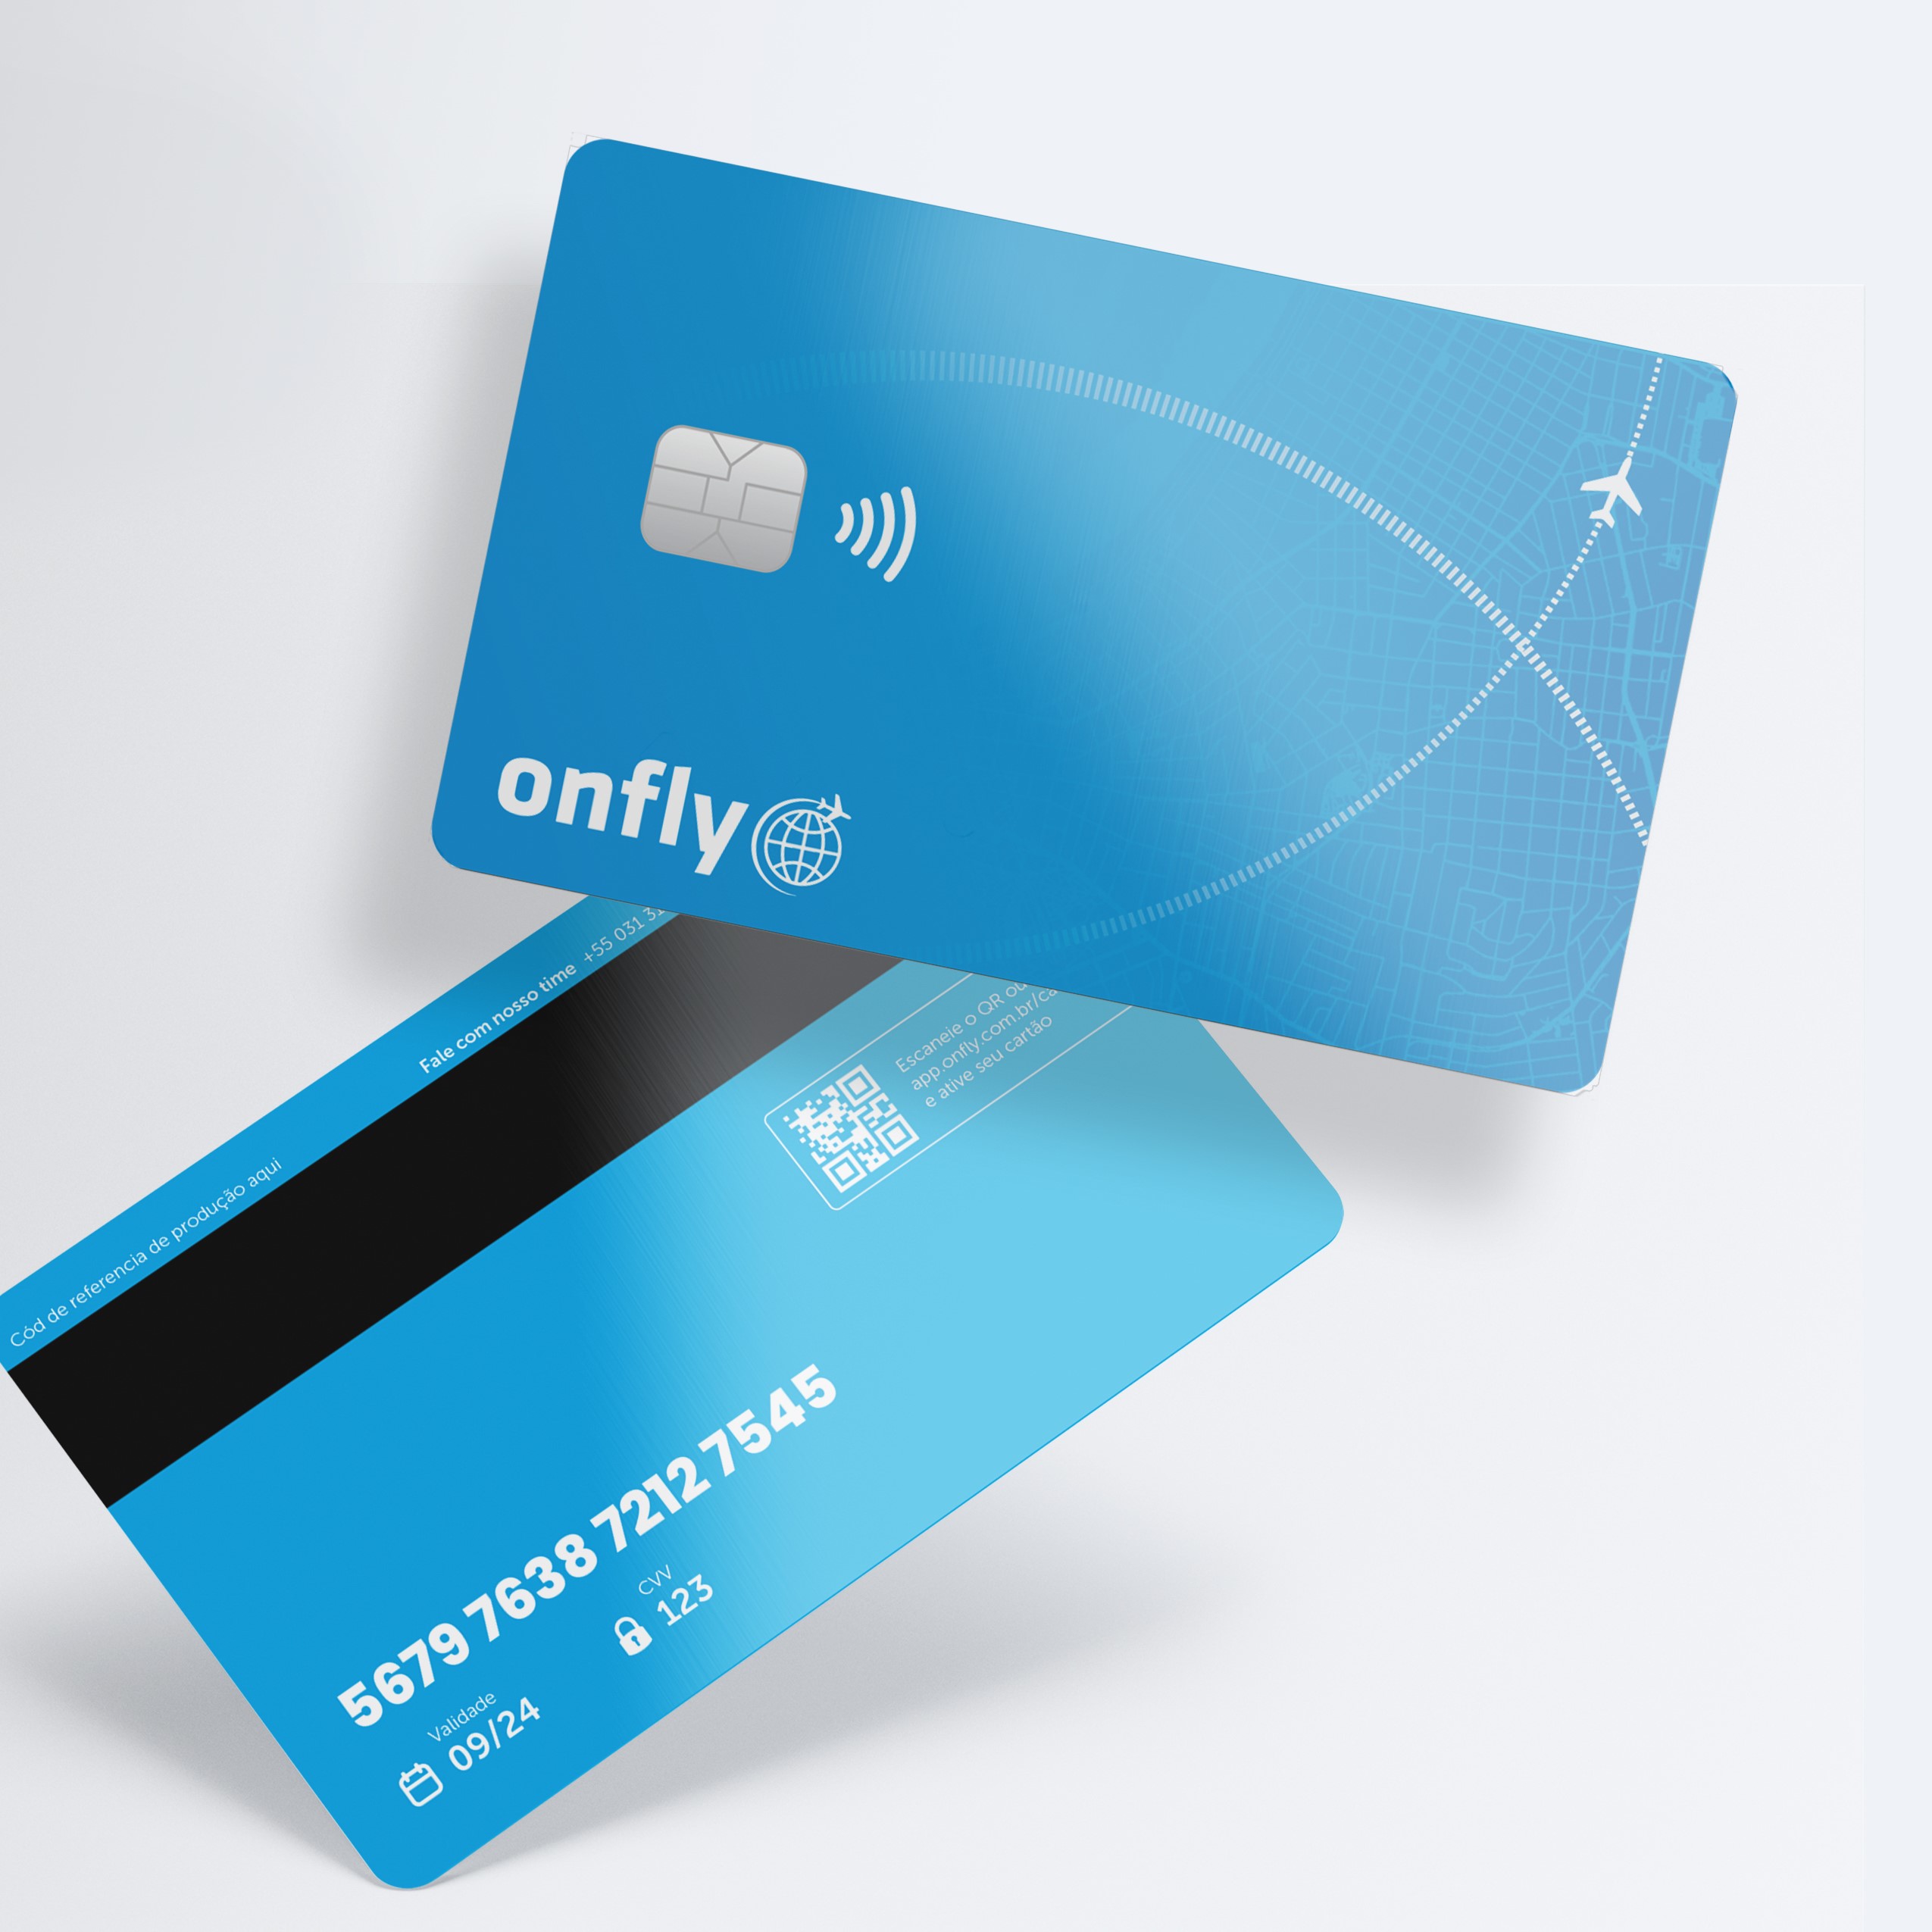 noticia Onfly lança cartão corporativo para acabar com o reembolso de despesas em viagens